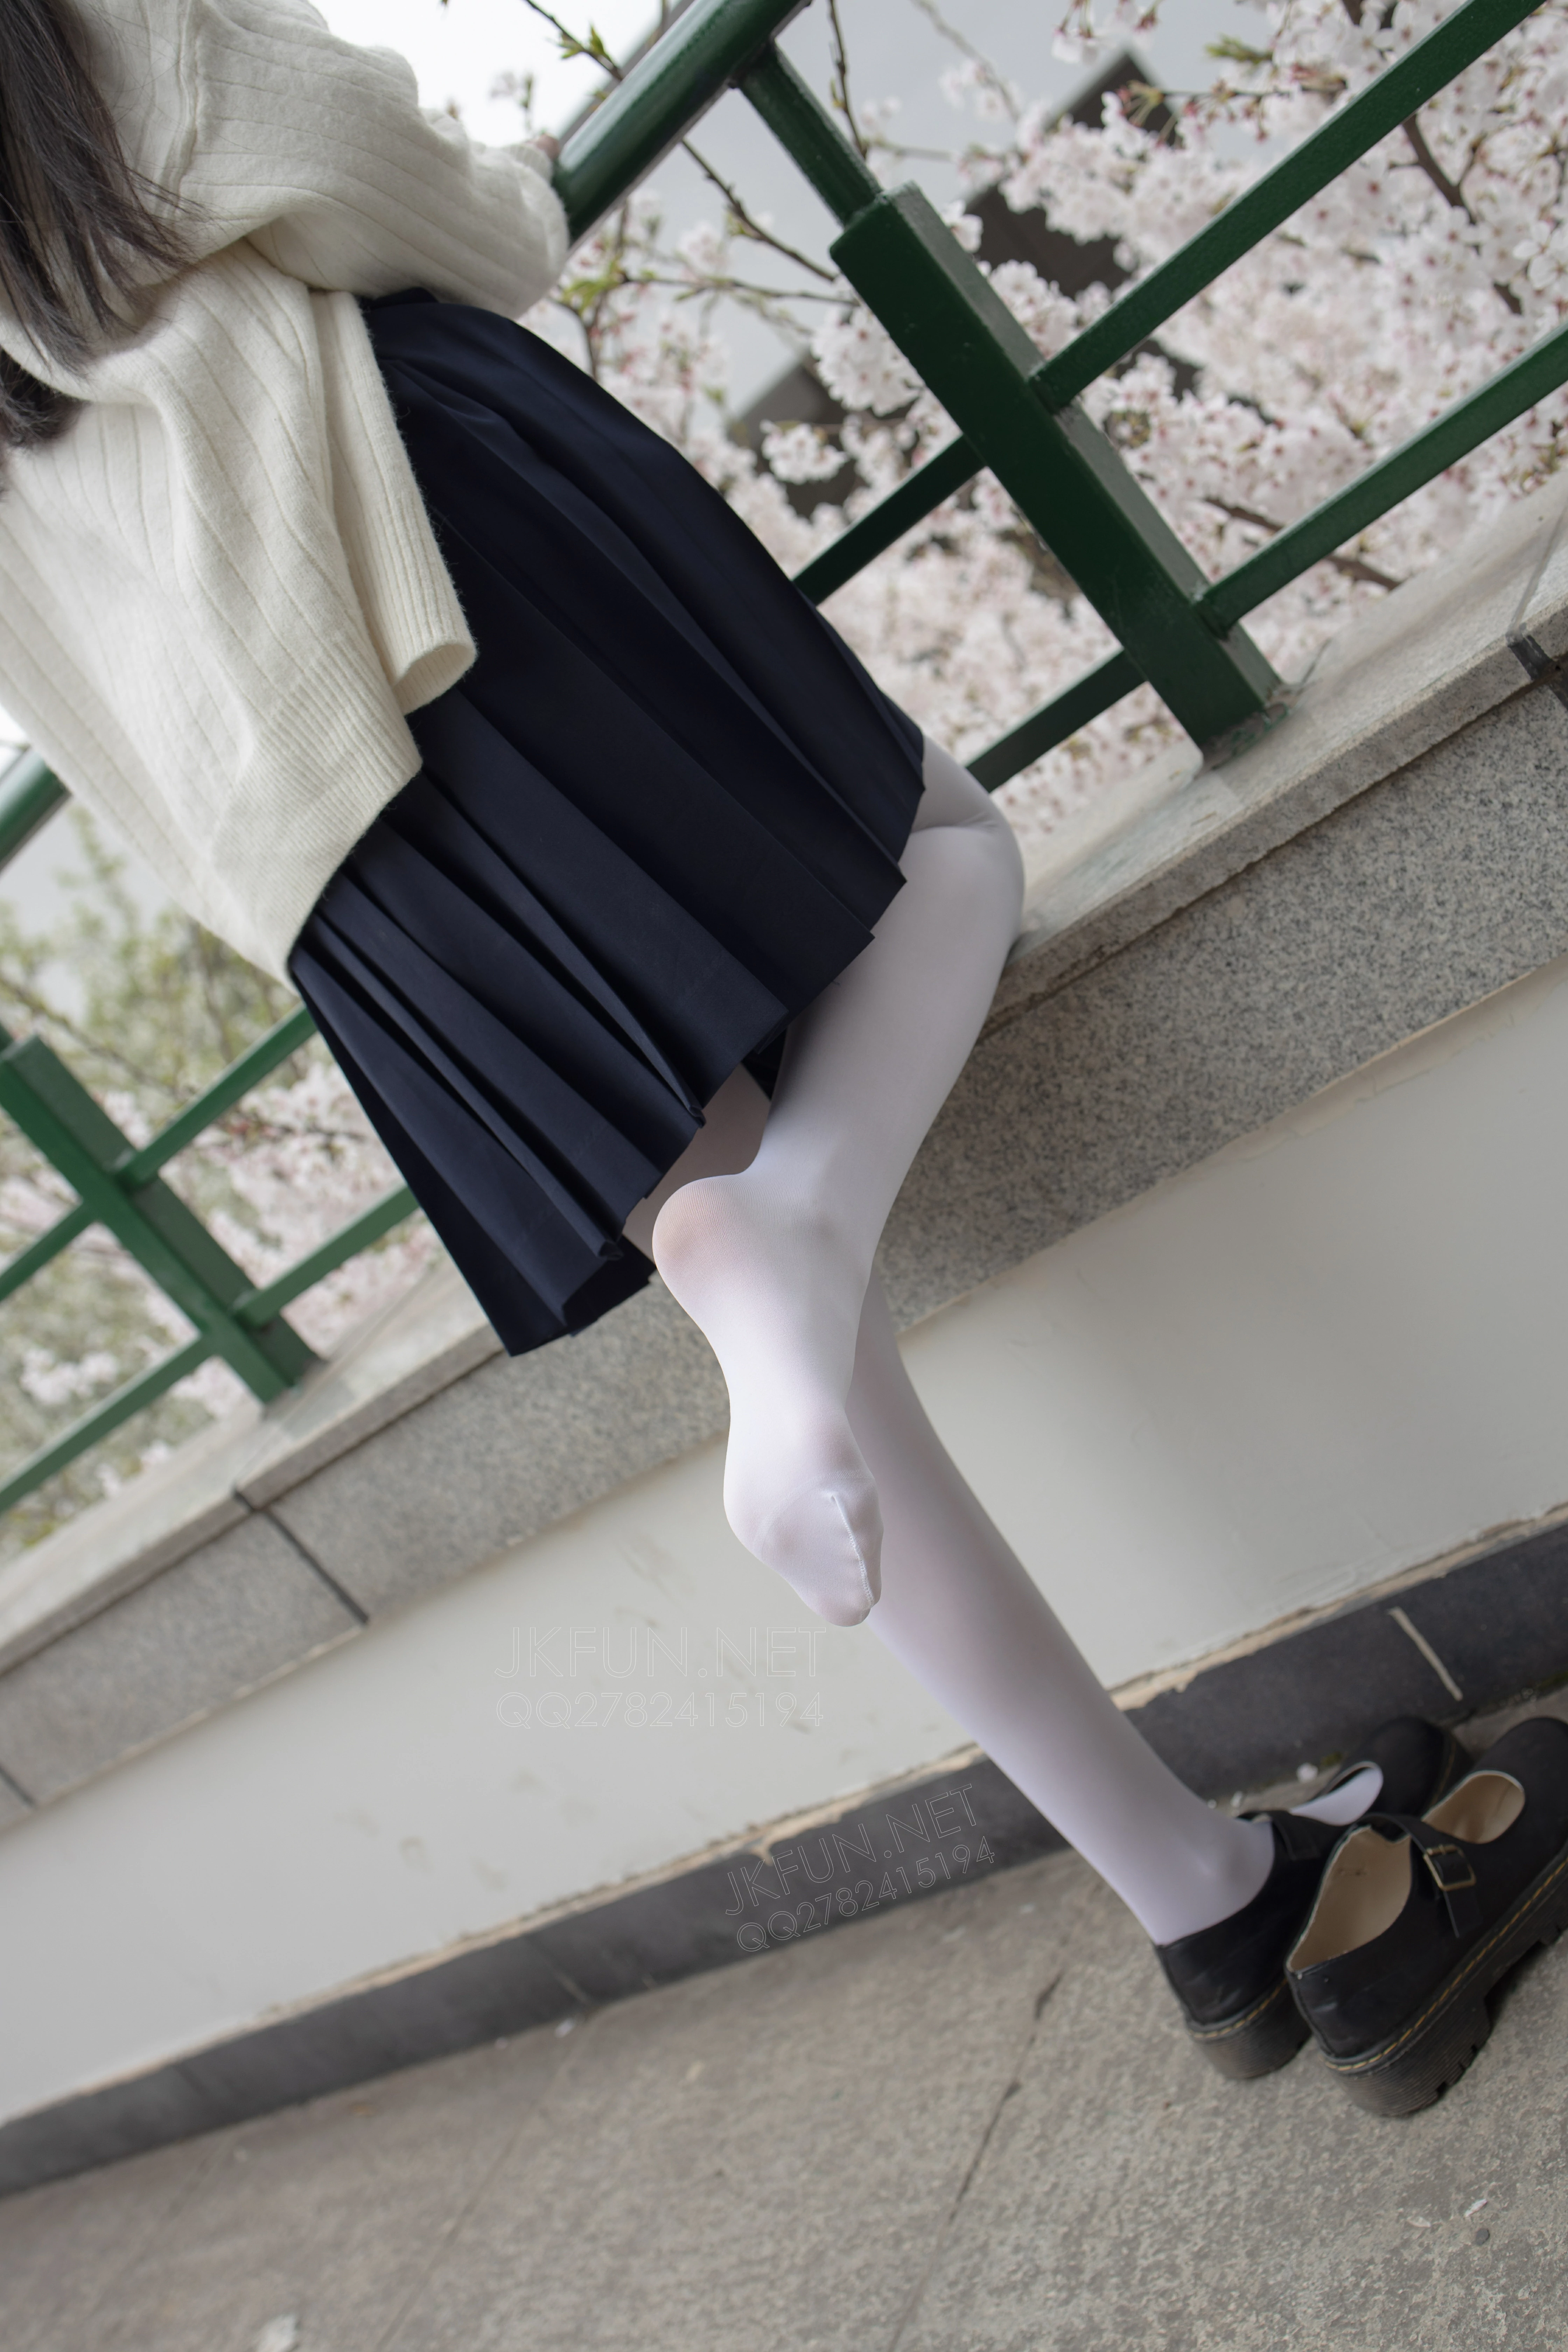 [森萝财团]JKFUN-001 清纯可爱小萝莉 甜米 高中女生制服与黑色短裙加白色丝袜美腿性感私房写真集,